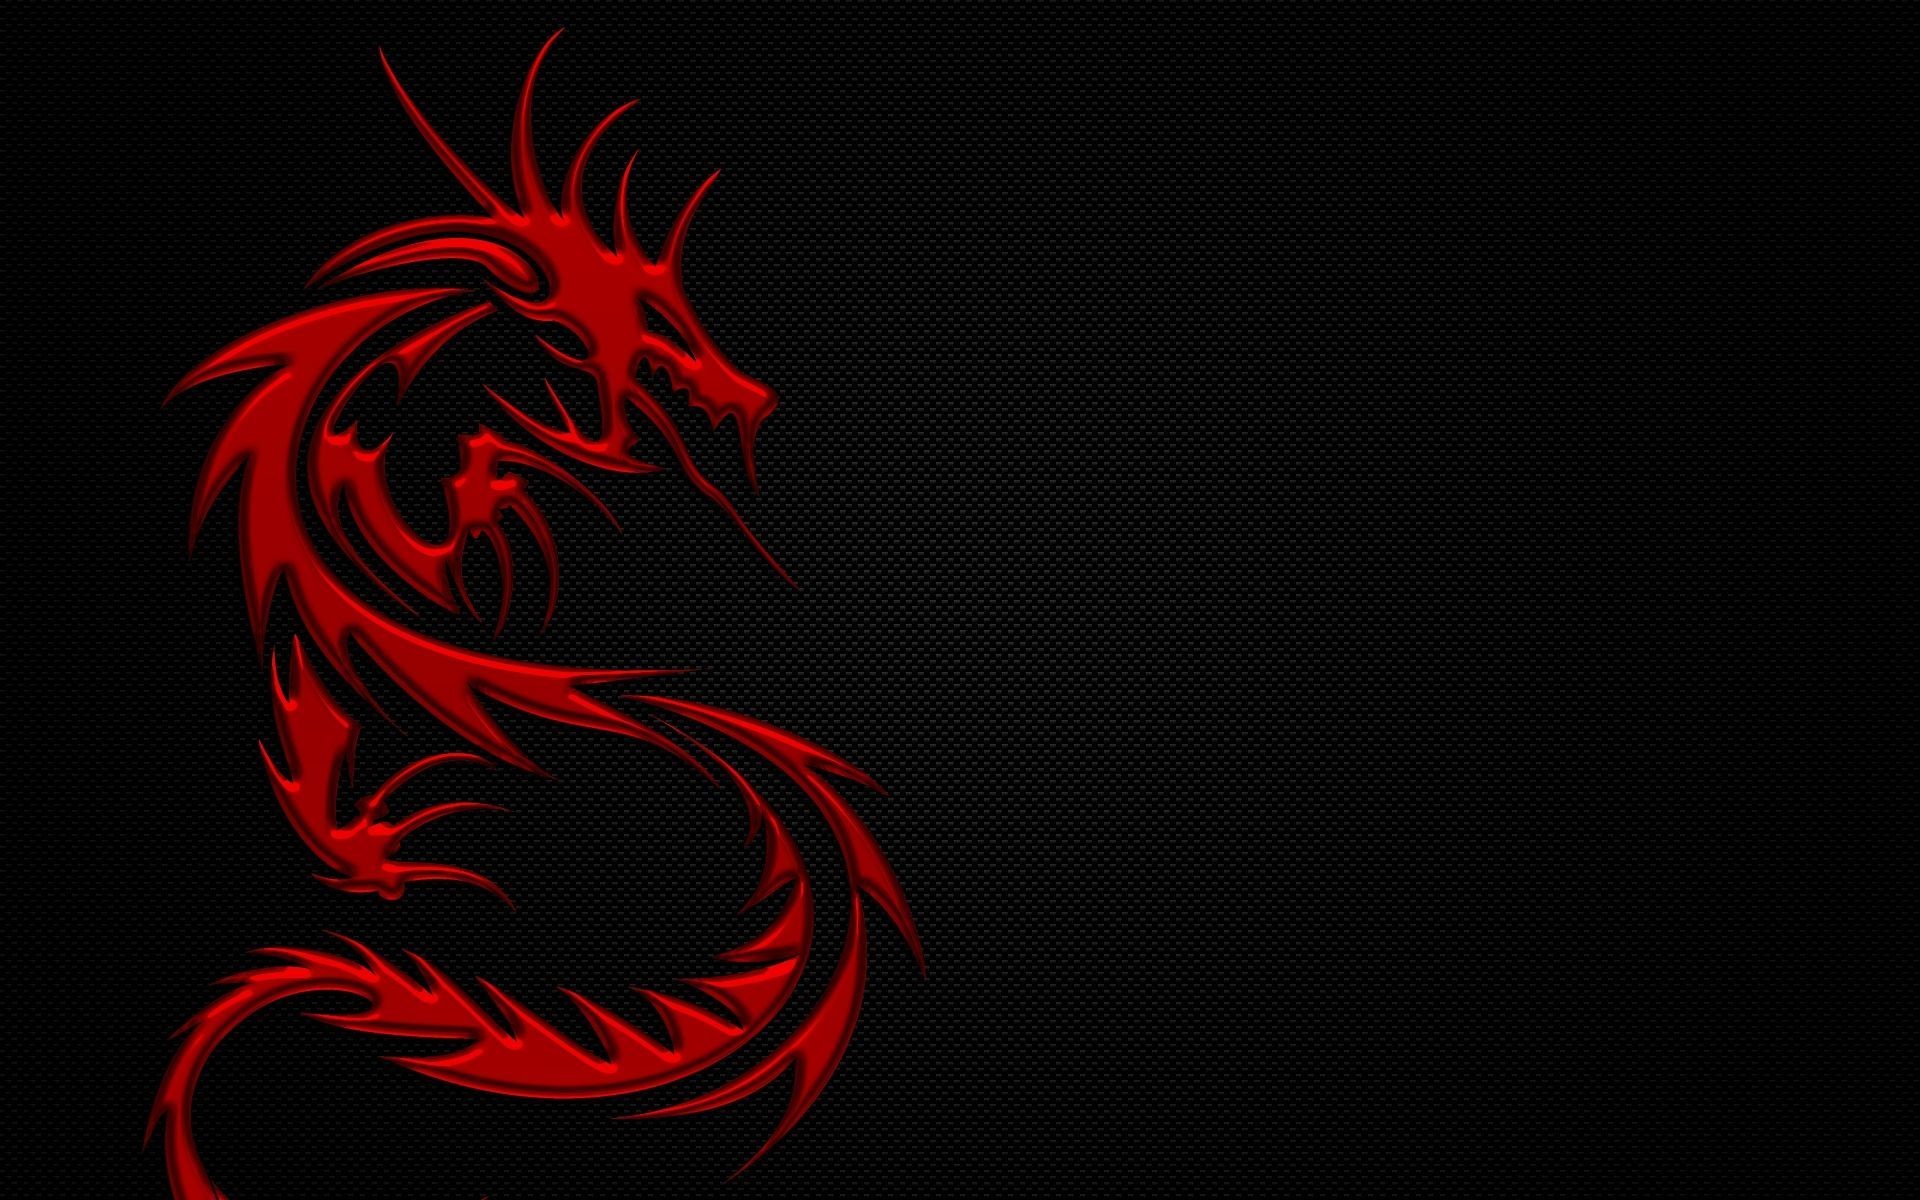 赤いドラゴンの壁紙,赤,黒,ドラゴン,架空の人物,グラフィックデザイン